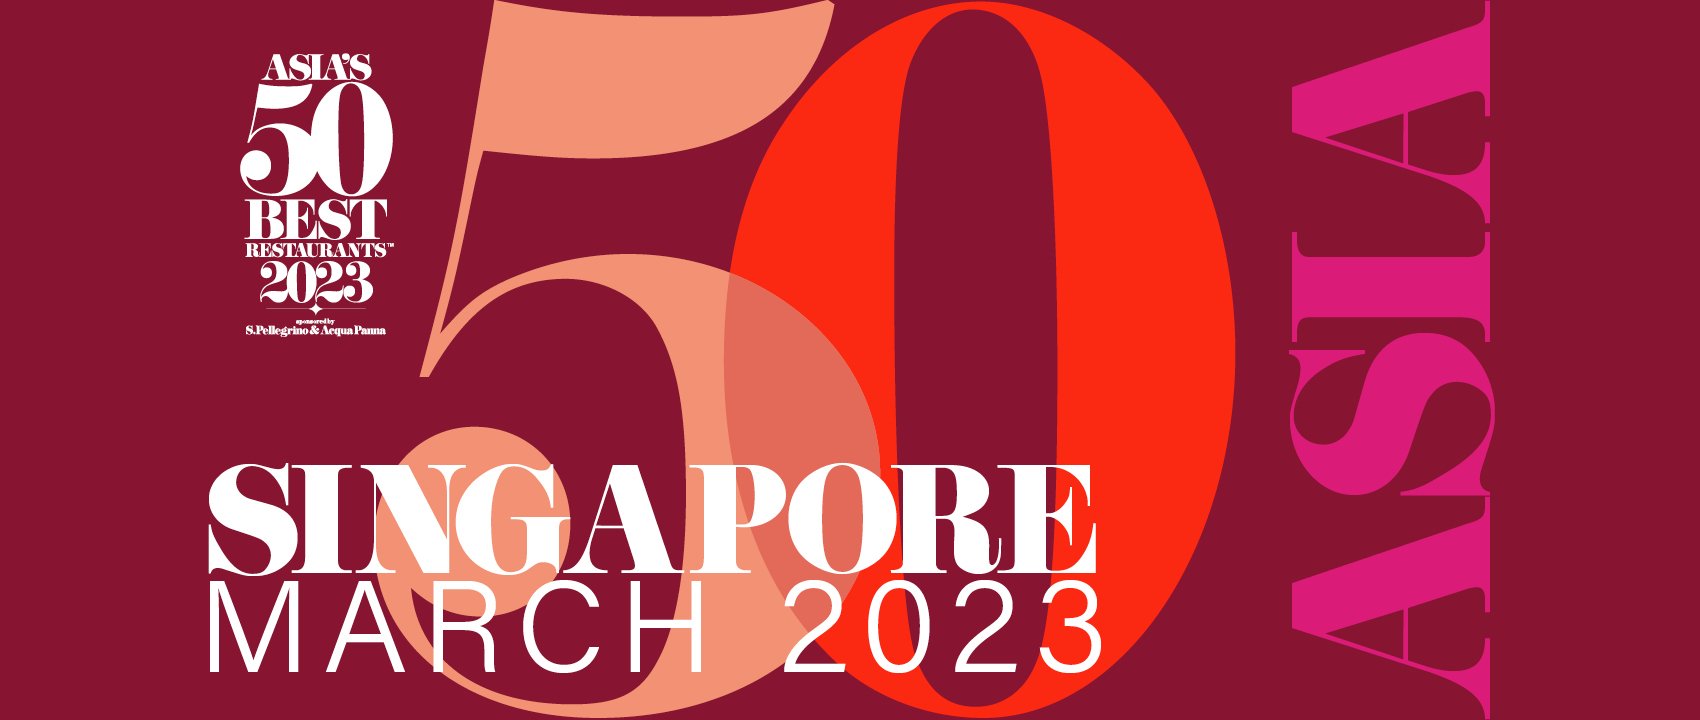 亞洲50最佳餐廳公佈2023年度51至100名單 3月28日將於新加坡公布前50